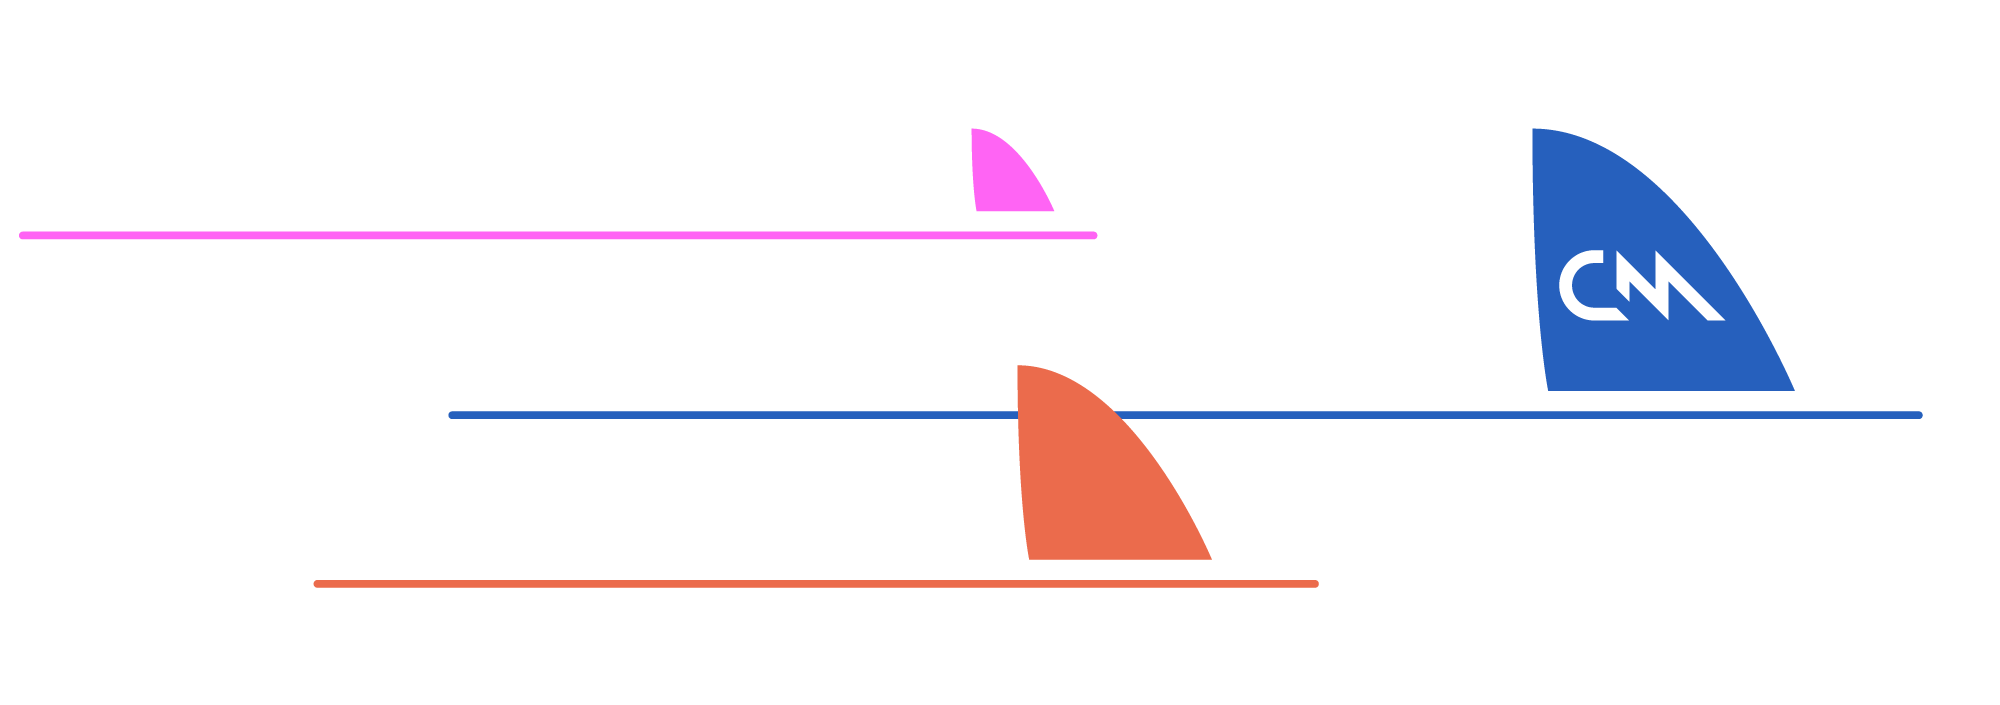 CM-Boat-Race